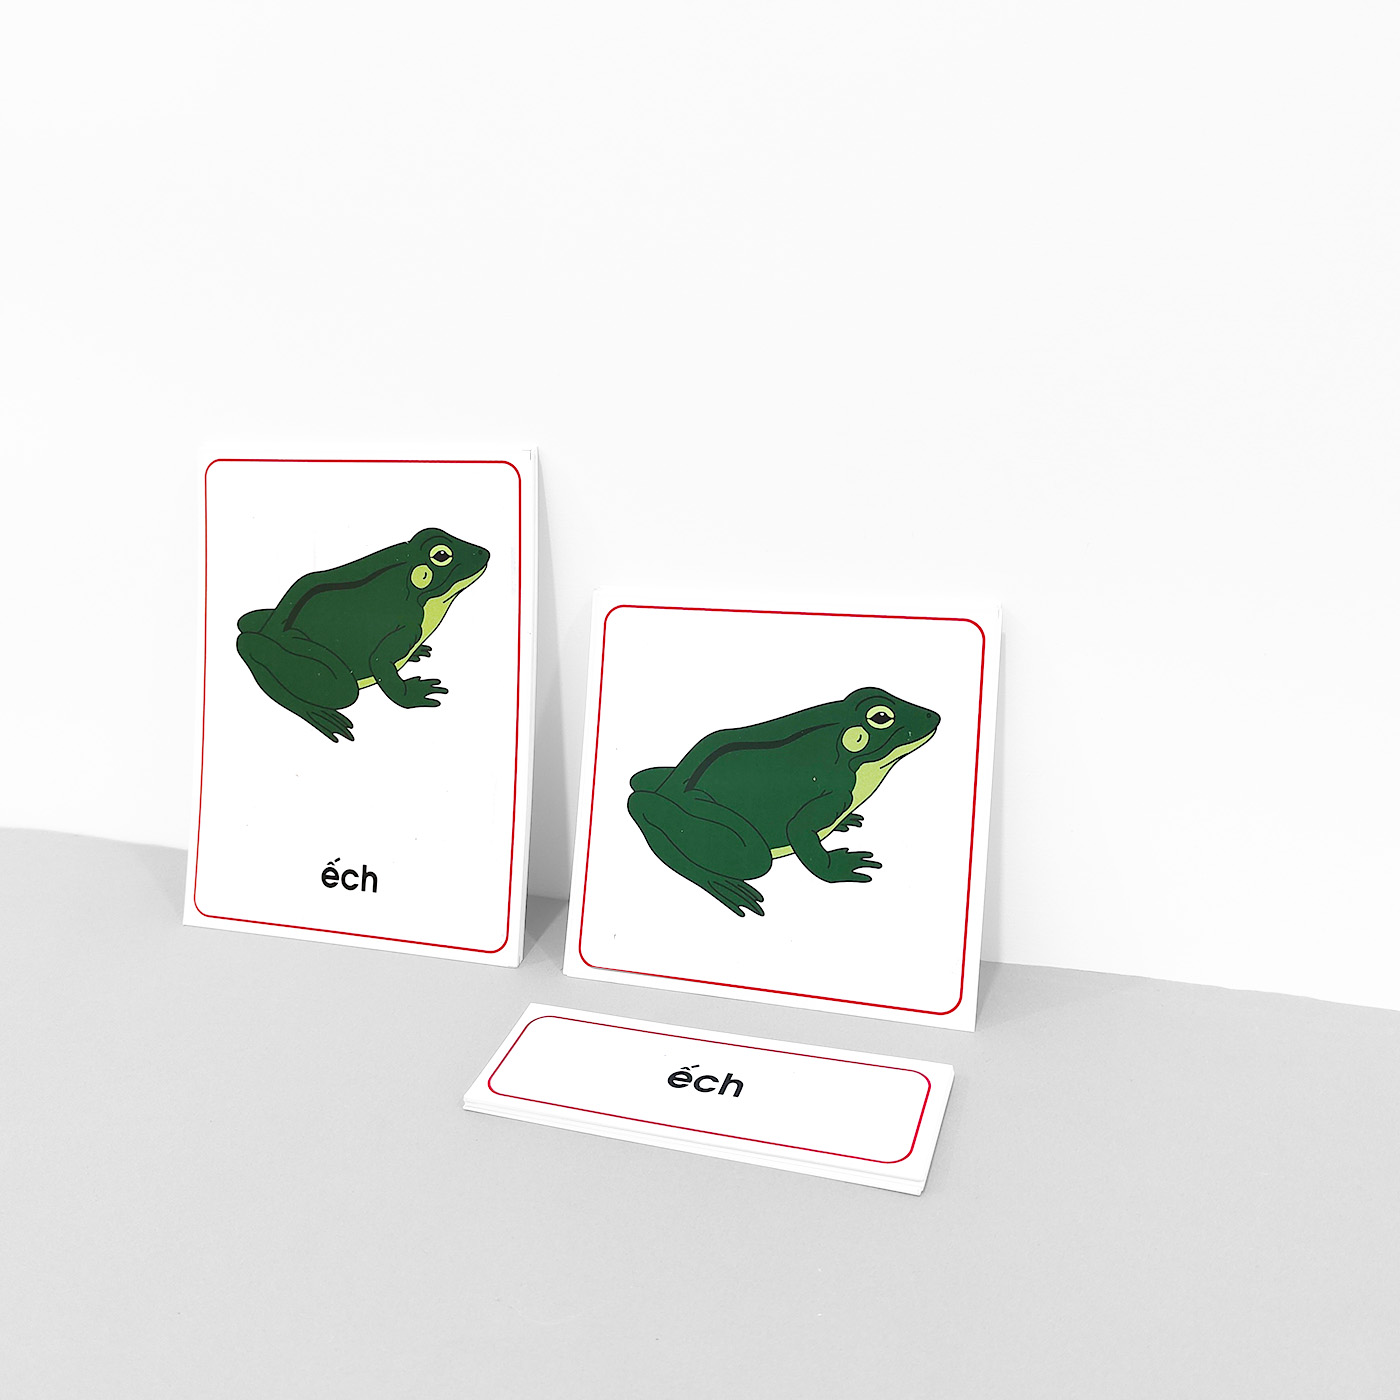 Thẻ 3 phần các bộ phận của ếch - Theo tủ động vật có khay